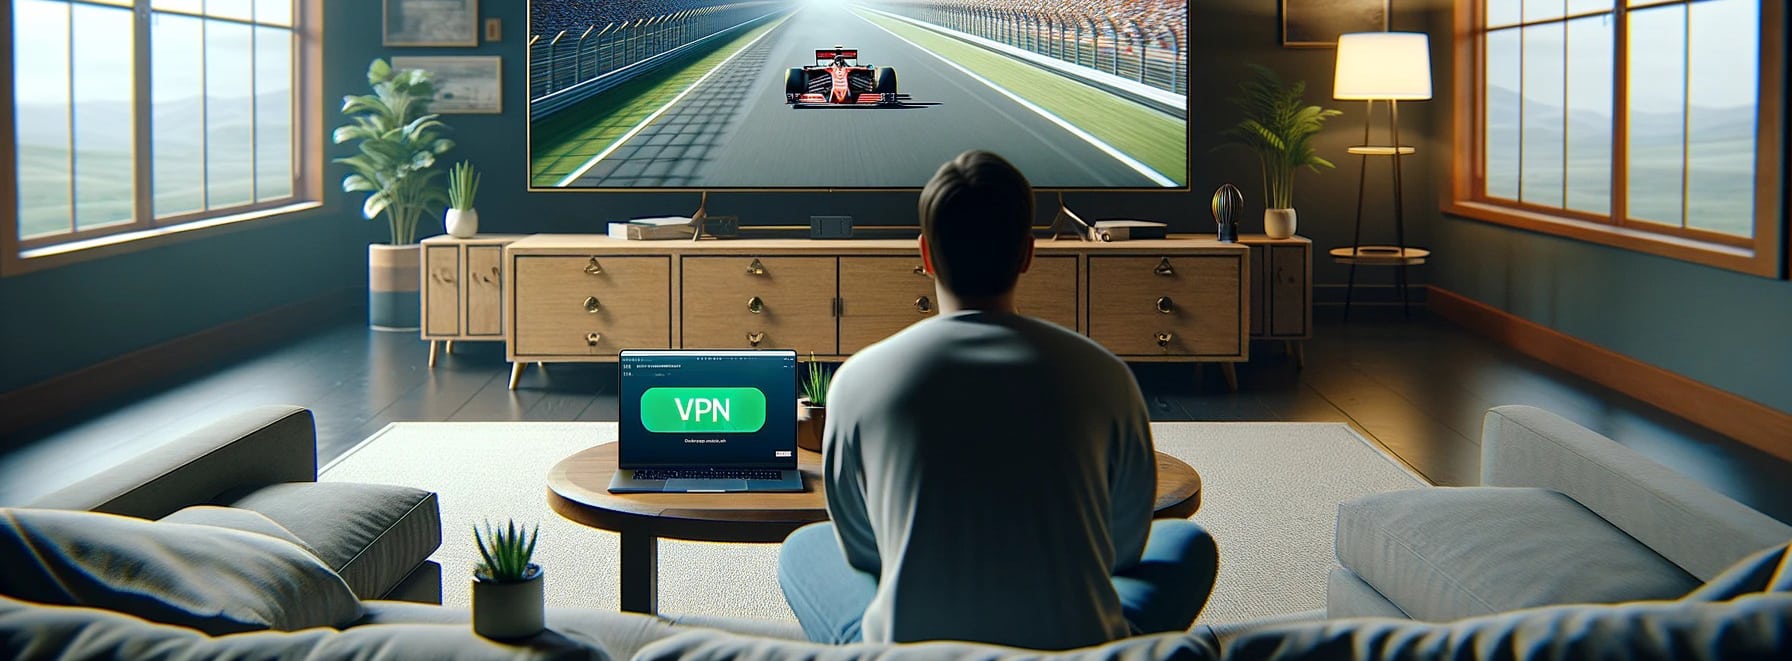 Formel 1 kostenlos mit VPN streamen